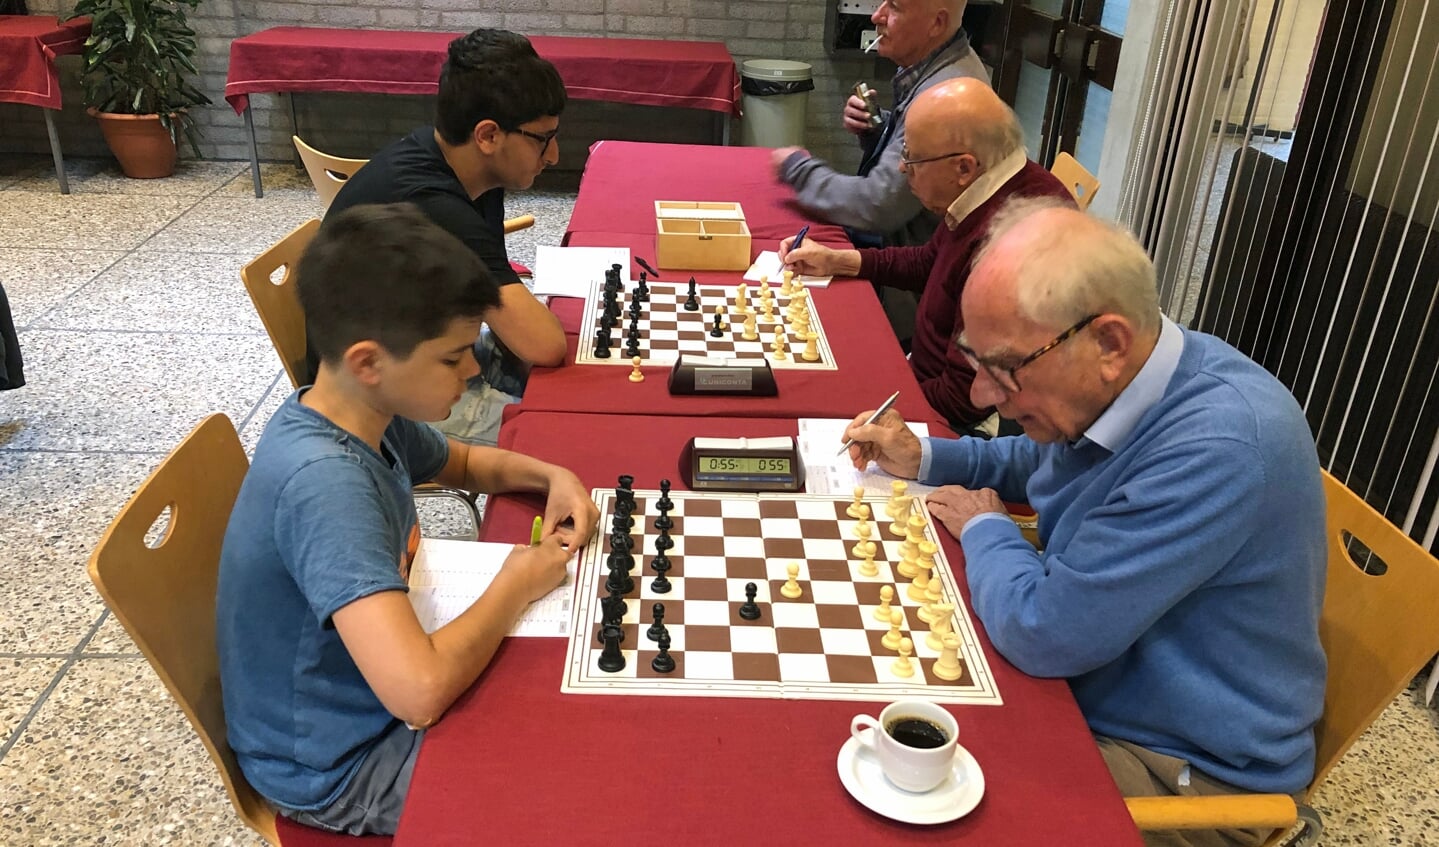 De jongste schaker, Koen van Wijngaarden links, versloeg routinier Kees van der Dussen. 